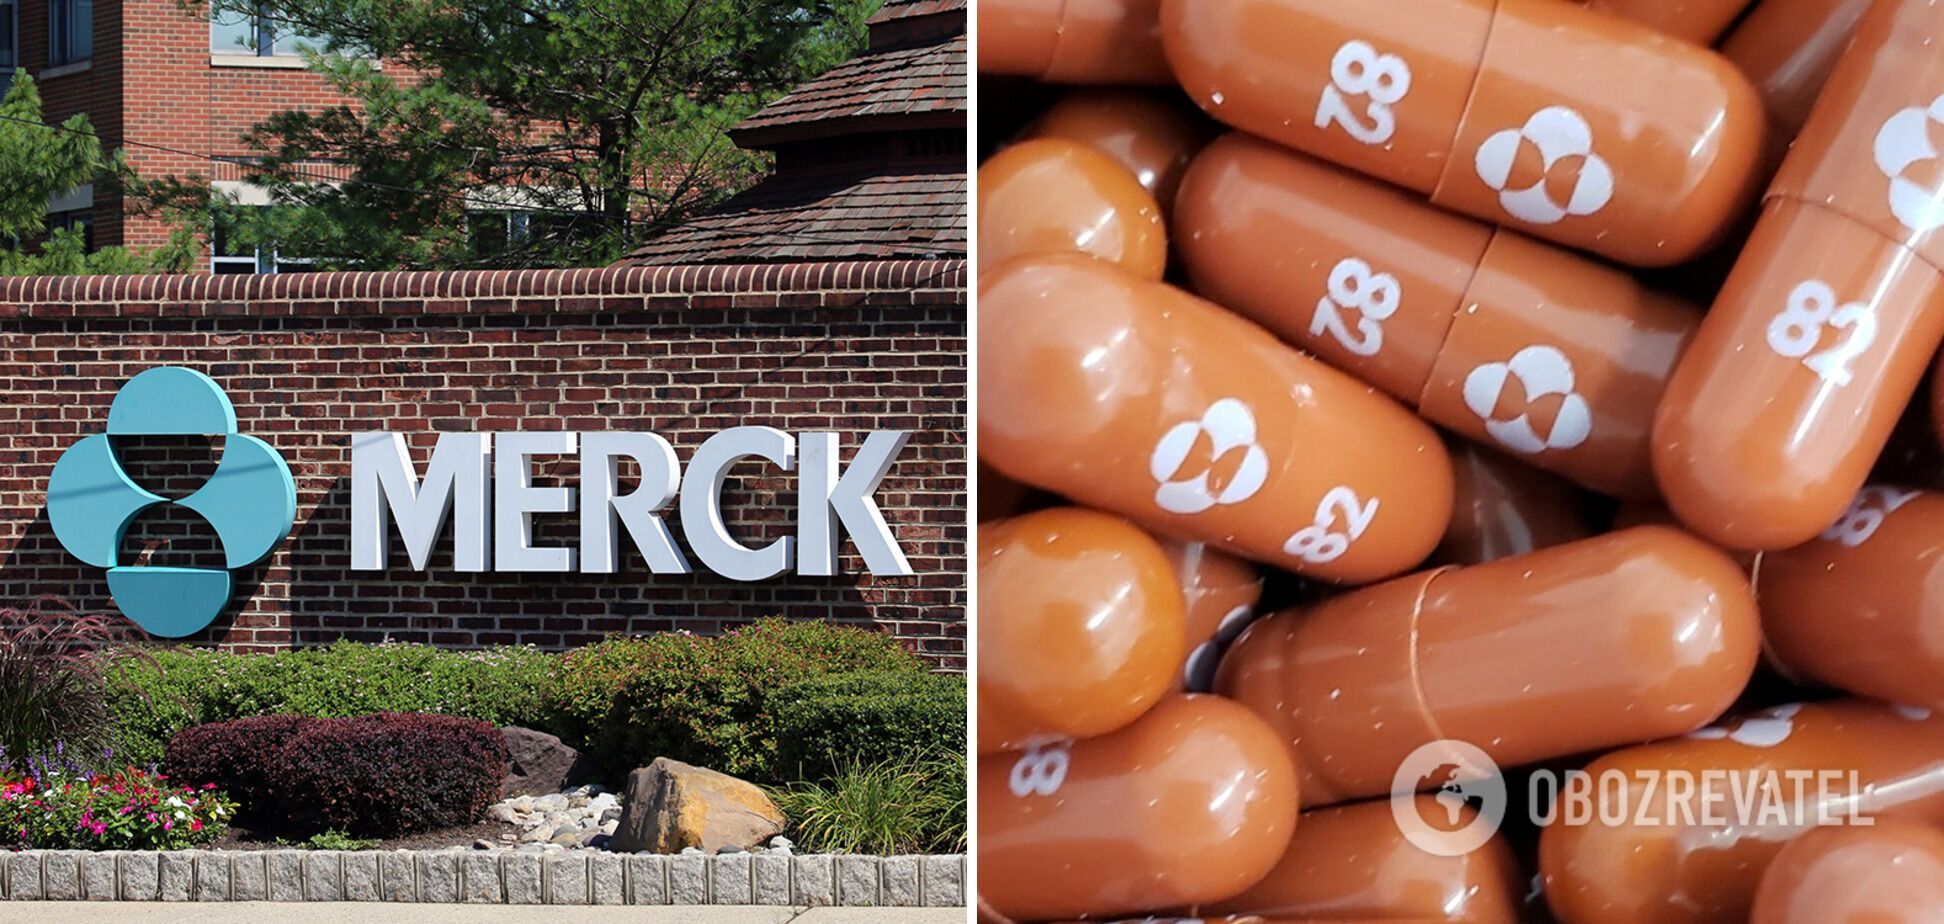 Таблетки "Молнупиравир" разработала компания Merck